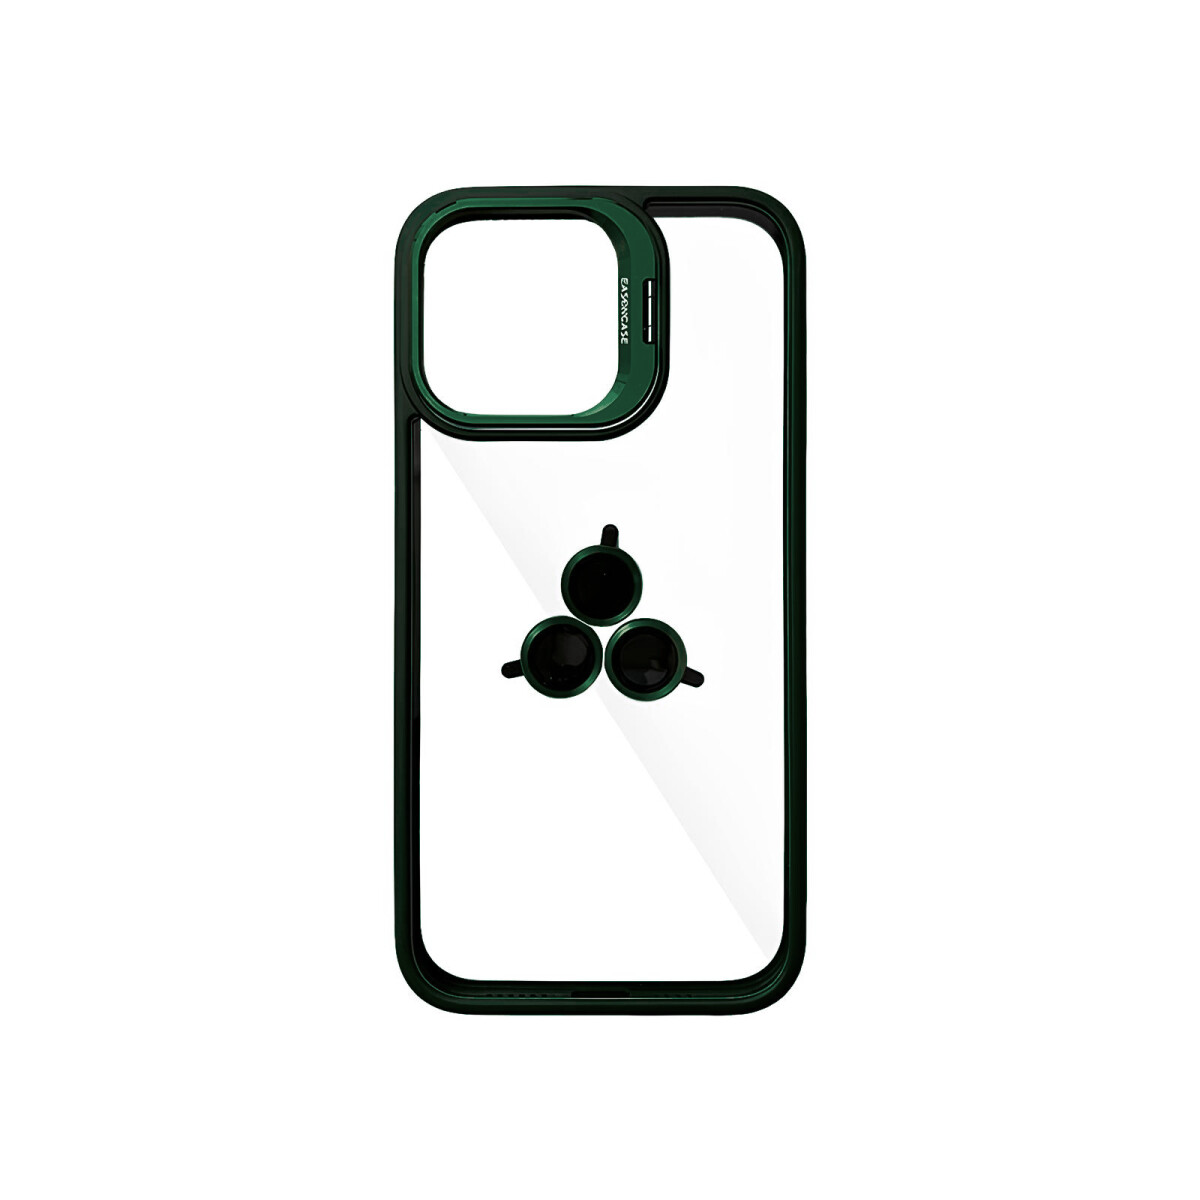 Case Transparente con Borde de Color y Protector de Lente Iphone 11 - Green 